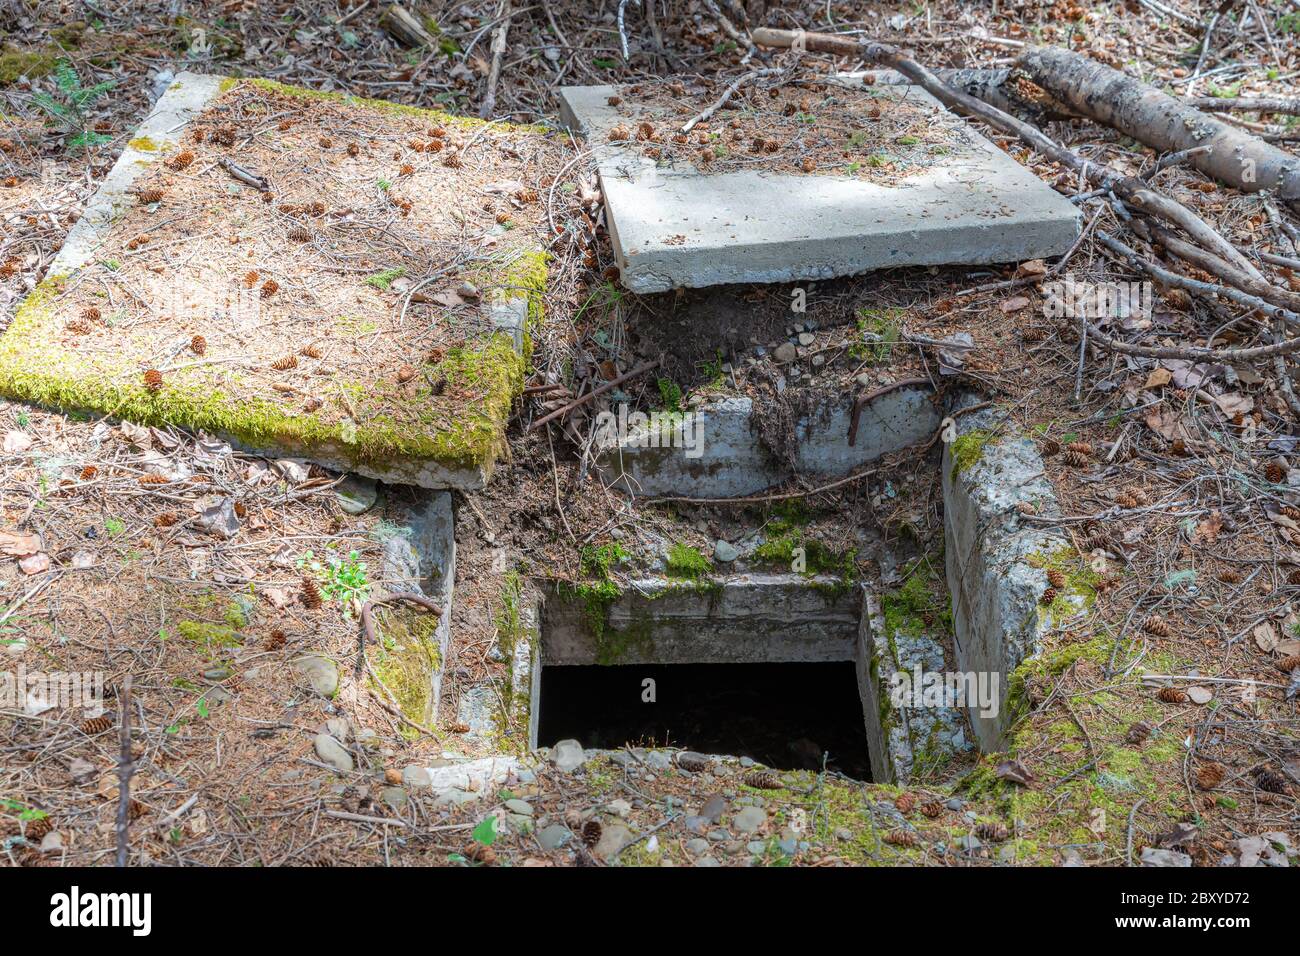 L'entrée d'un ancien bunker souterrain en béton. L'entrée est ouverte avec deux couvercles en béton au sol. Situé dans les bois. Banque D'Images